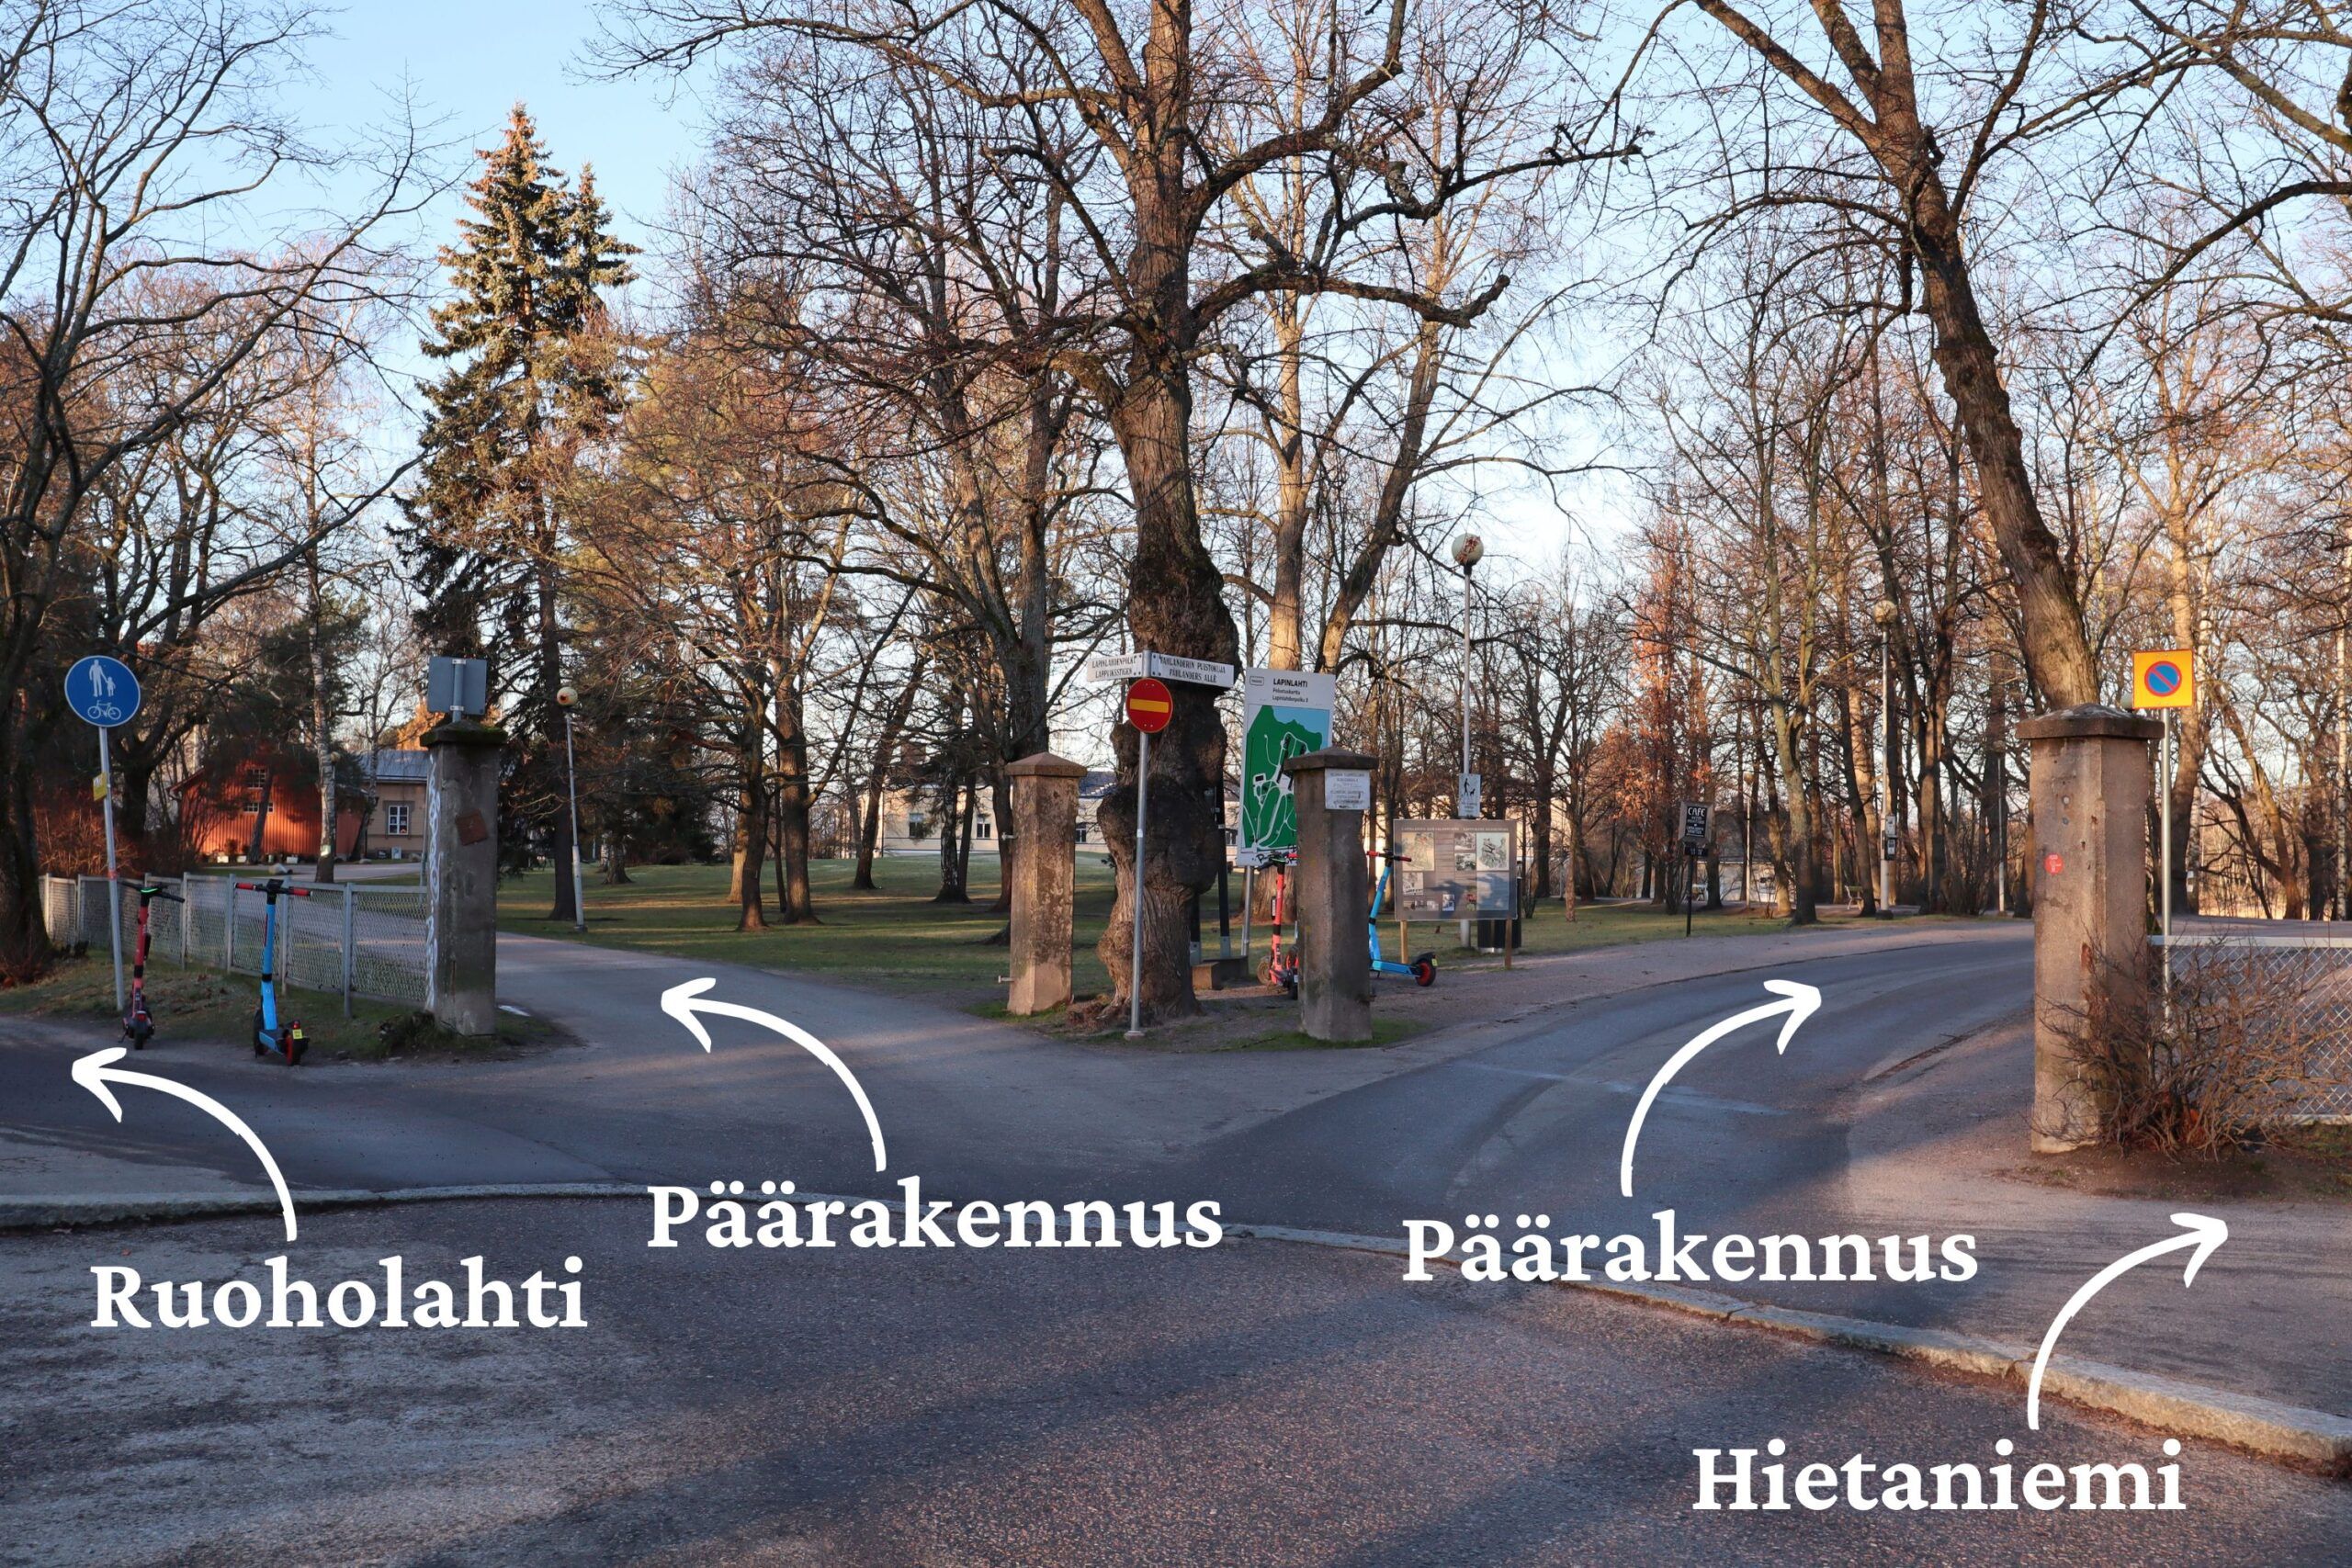 Kuvassa on Lapinlahden puiston pääportti sekä ohjenuolia, jotka kertovat, missä päärakennus ym. on